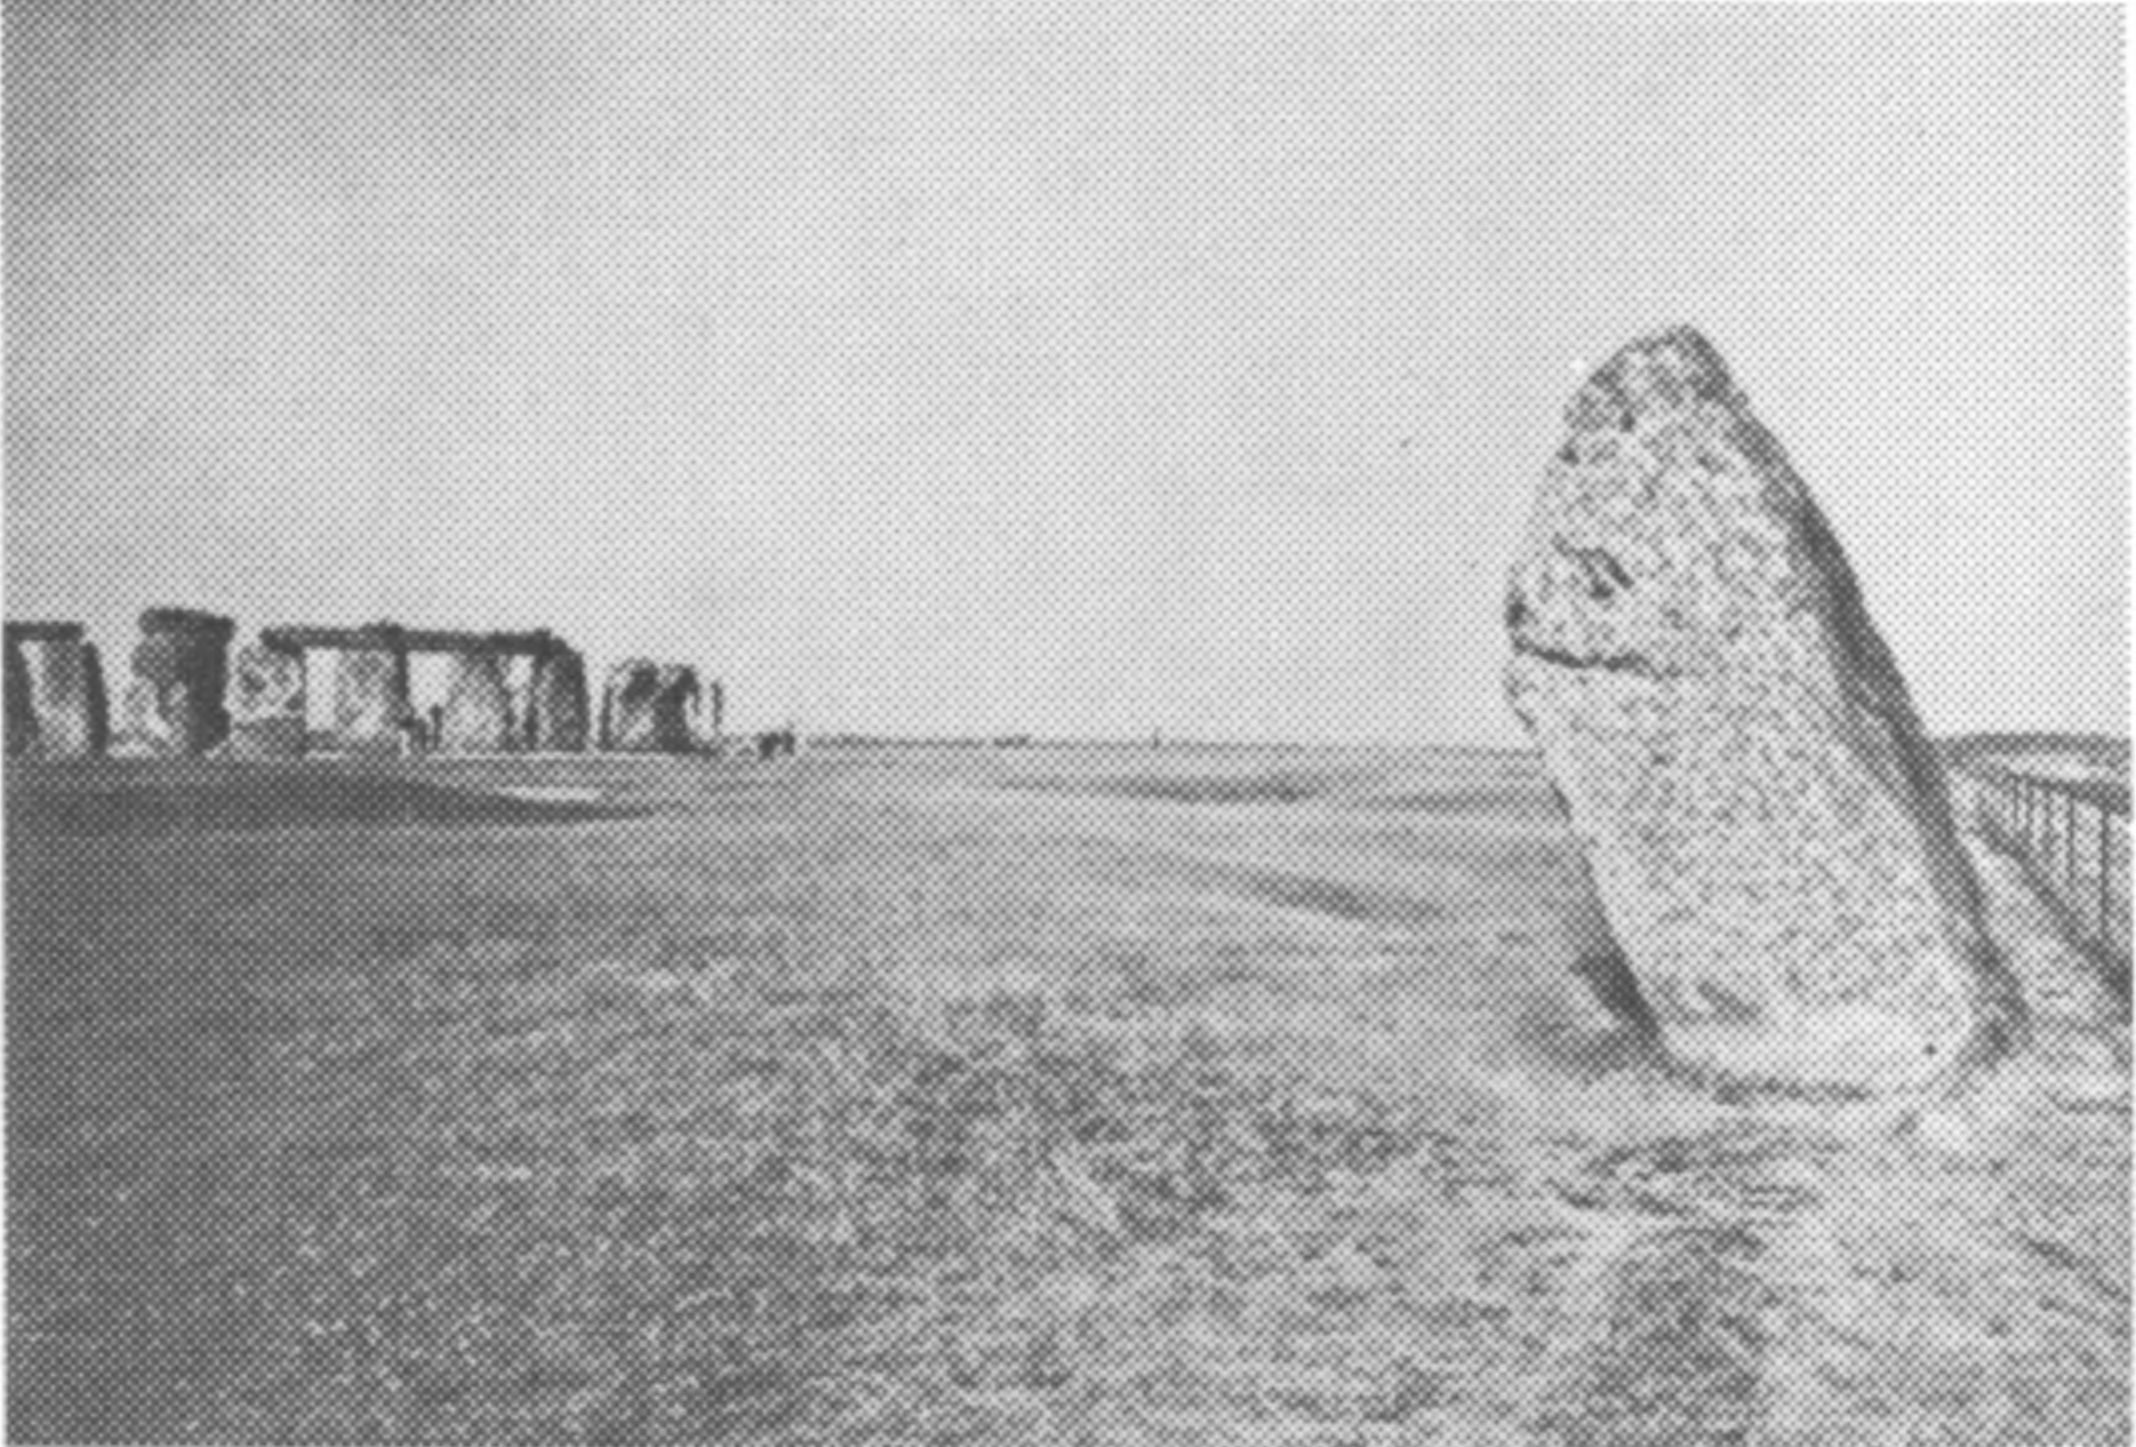 Фото 10. Пяточный камень, вид с востока; обратите внимание на его наклон